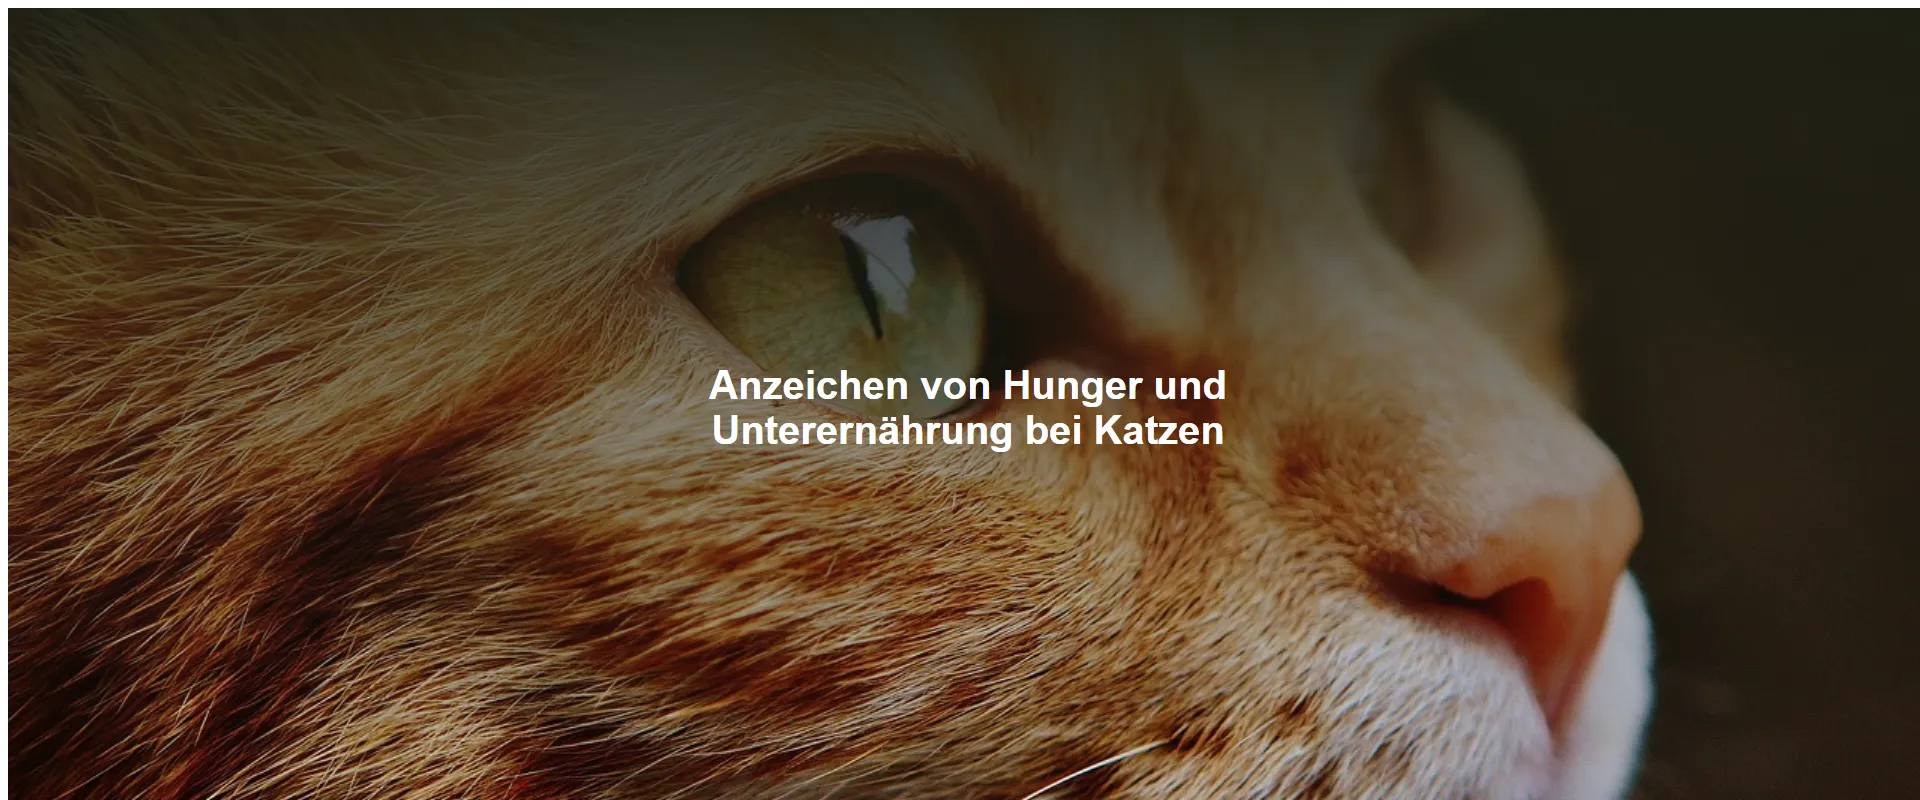 Anzeichen von Hunger und Unterernährung bei Katzen